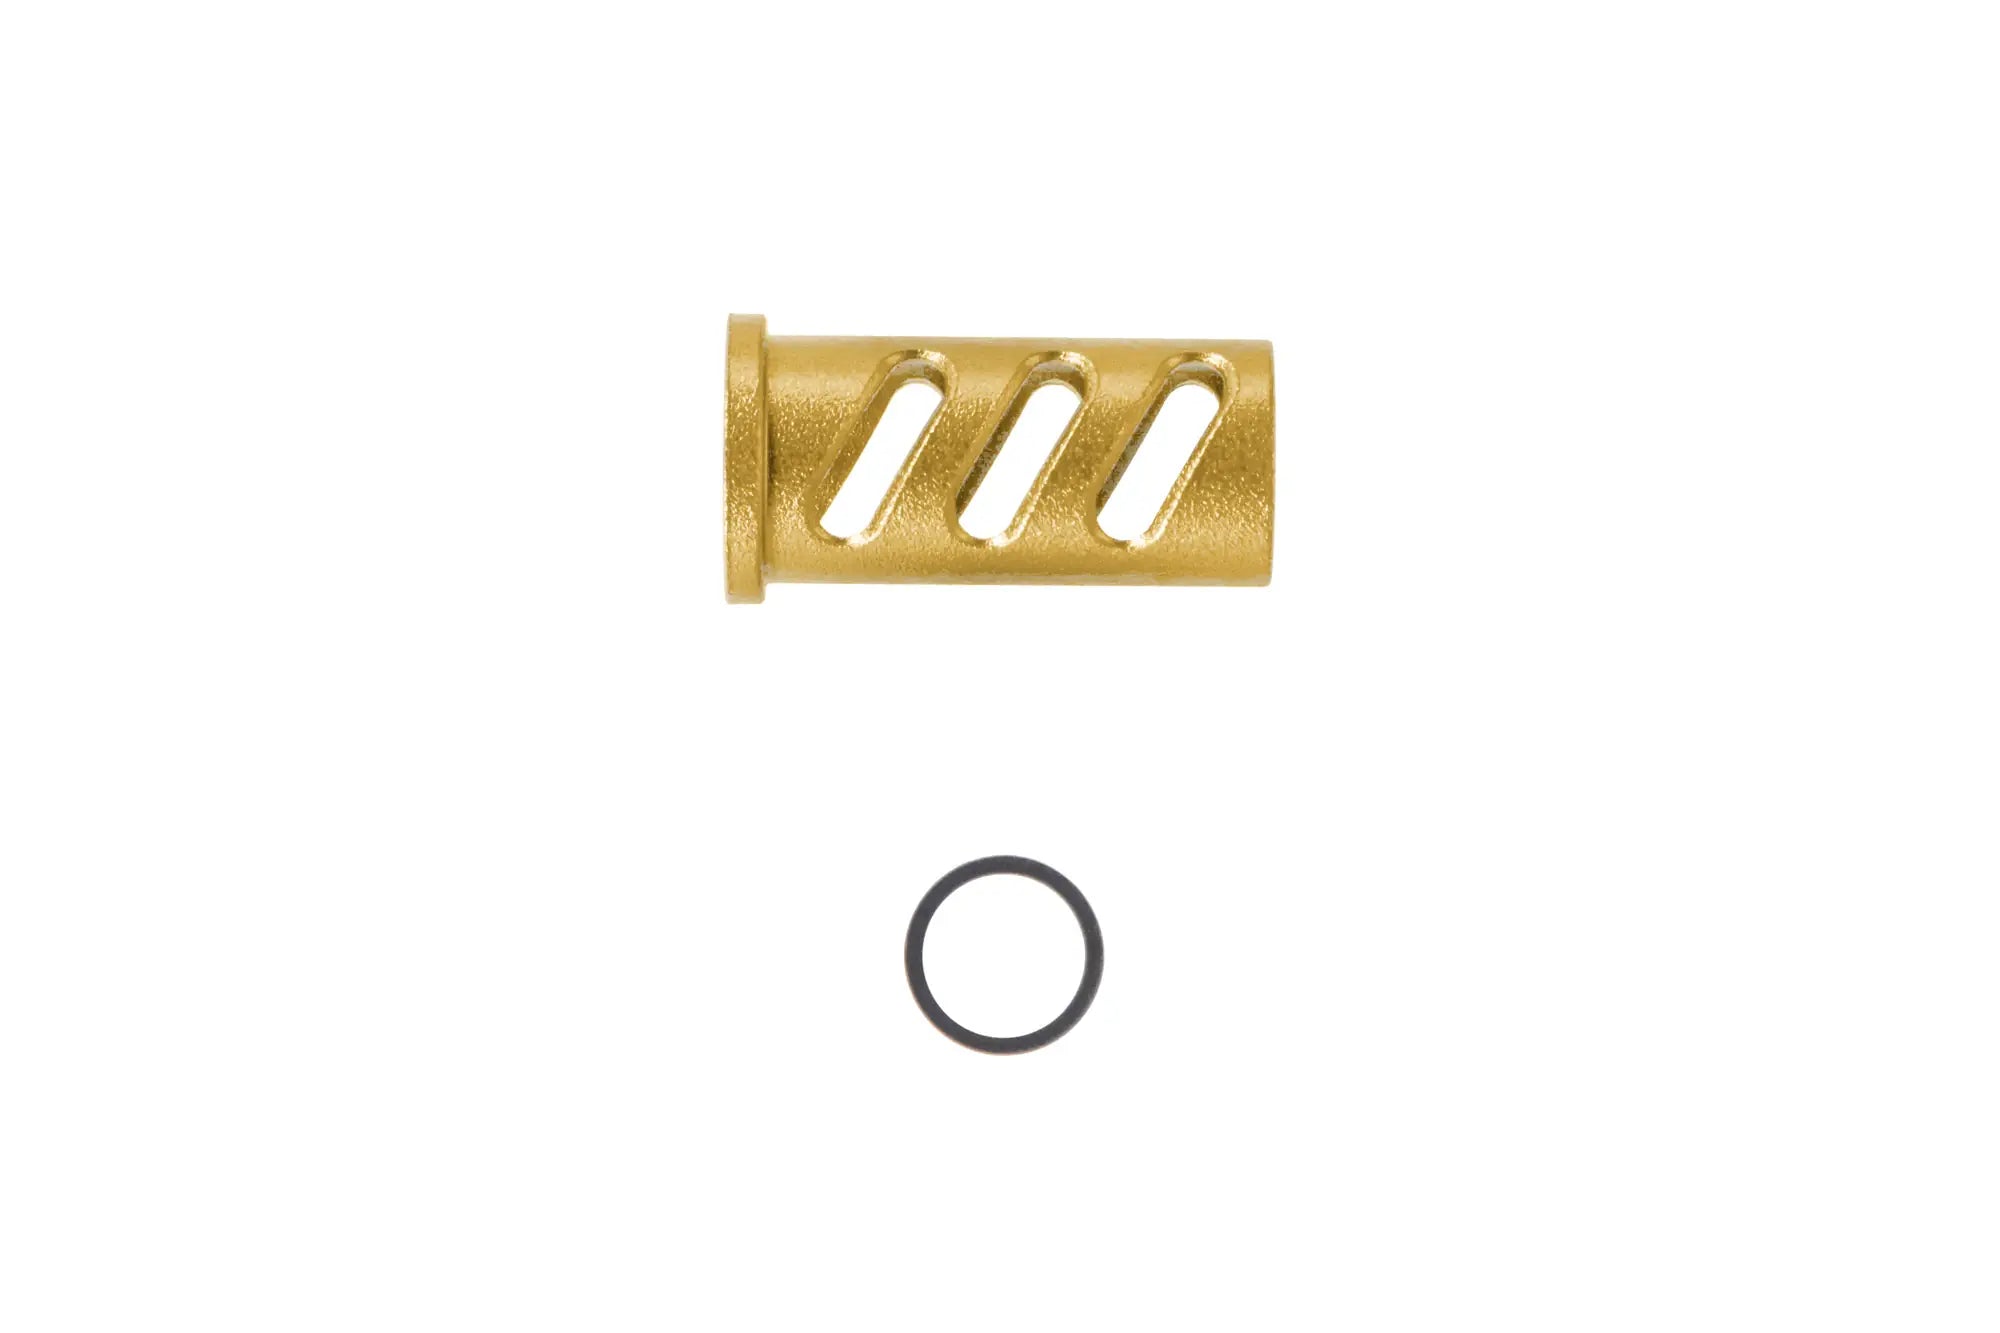 LA Capa Customs CUTOUT lock guide cap for TM Hi-Capa 4.3 replicas (with Delrin ring) Gold